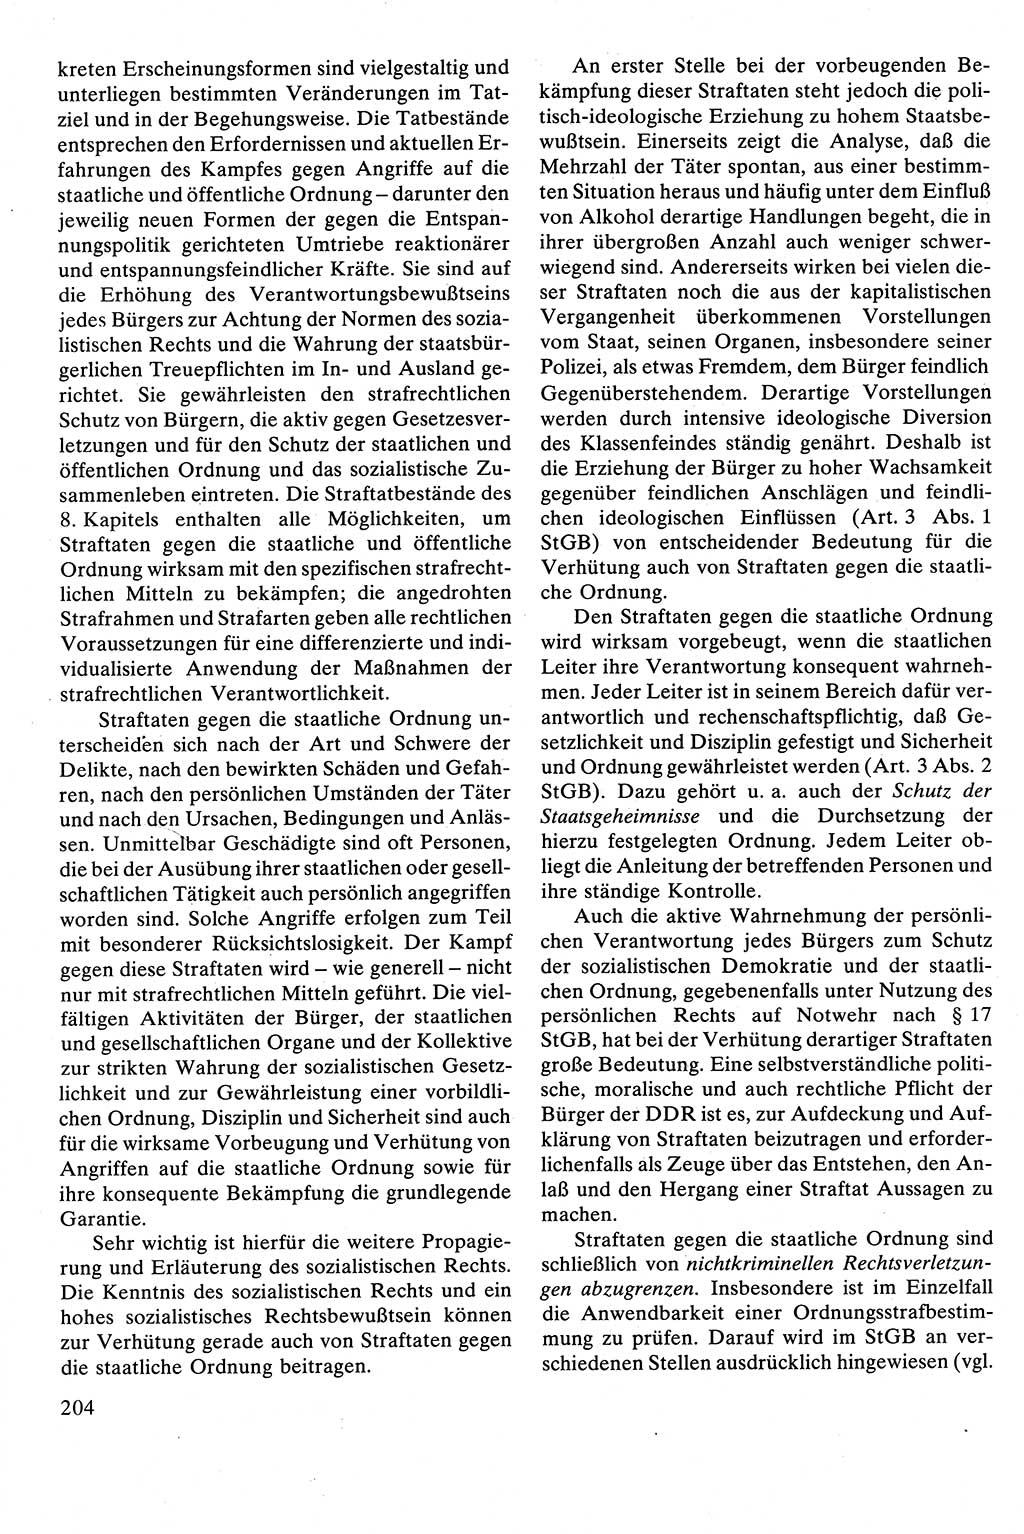 Strafrecht [Deutsche Demokratische Republik (DDR)], Besonderer Teil, Lehrbuch 1981, Seite 204 (Strafr. DDR BT Lb. 1981, S. 204)